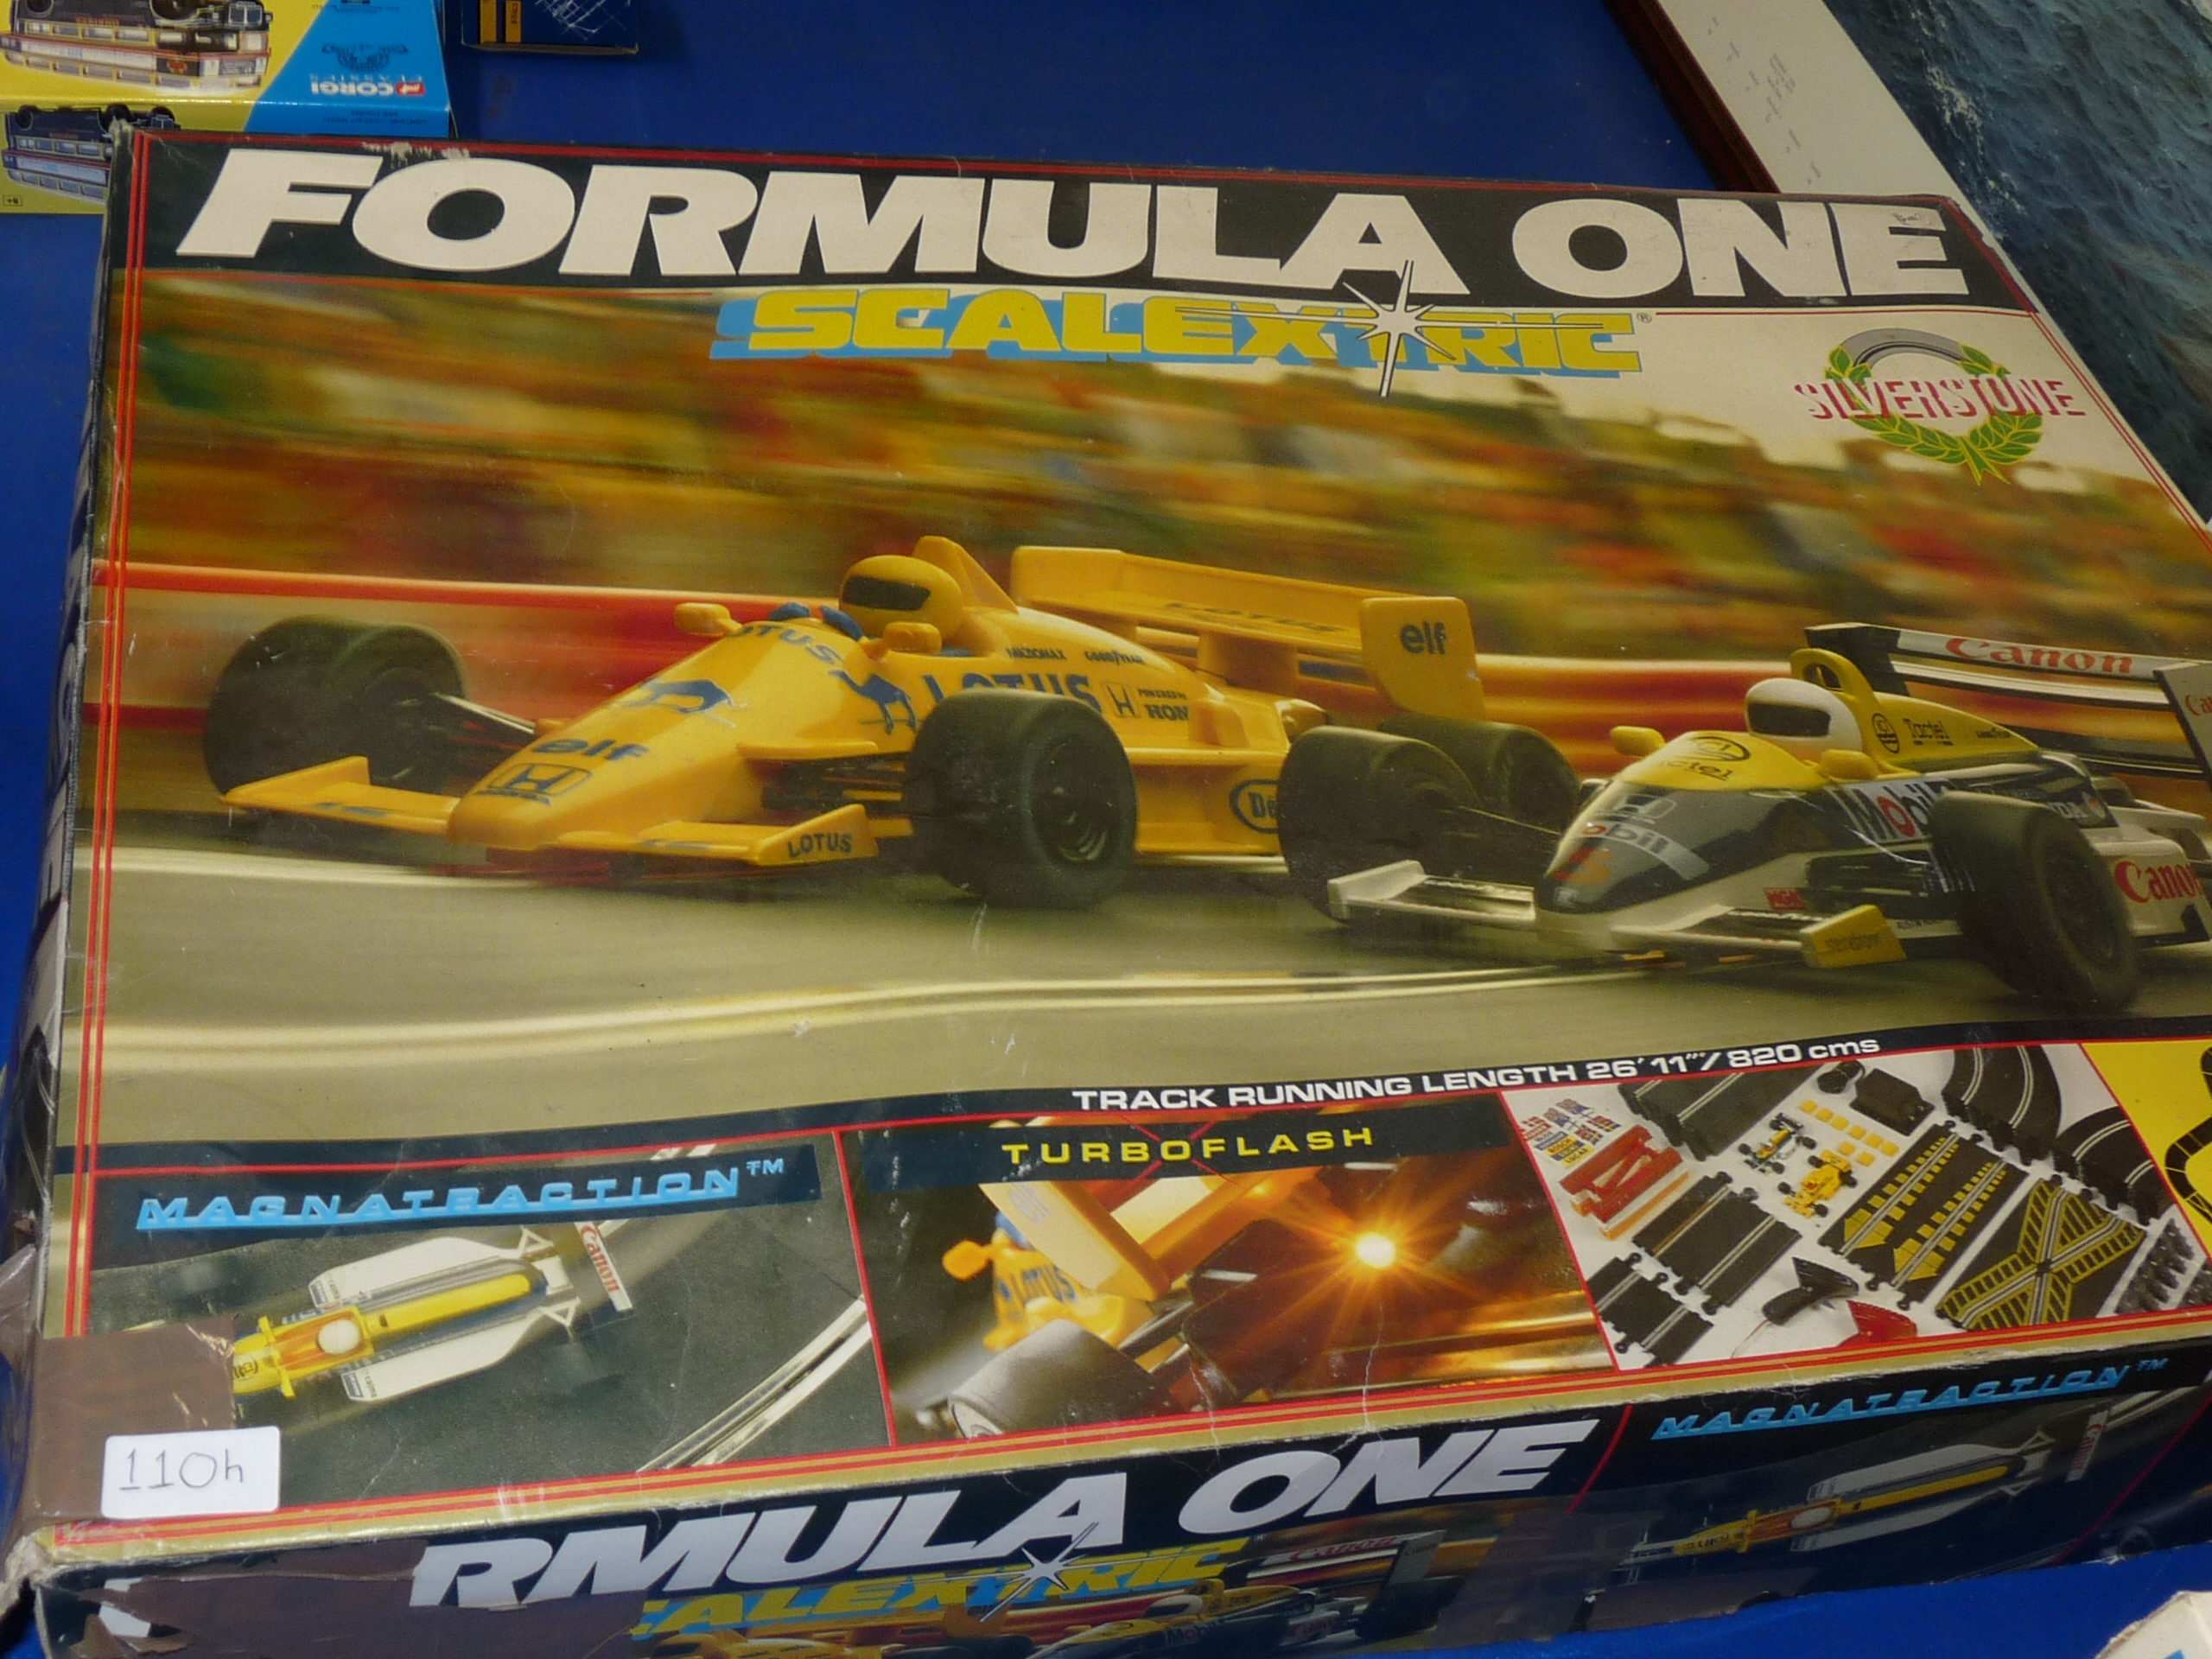 Formula One Scalextric set - Image 2 of 2